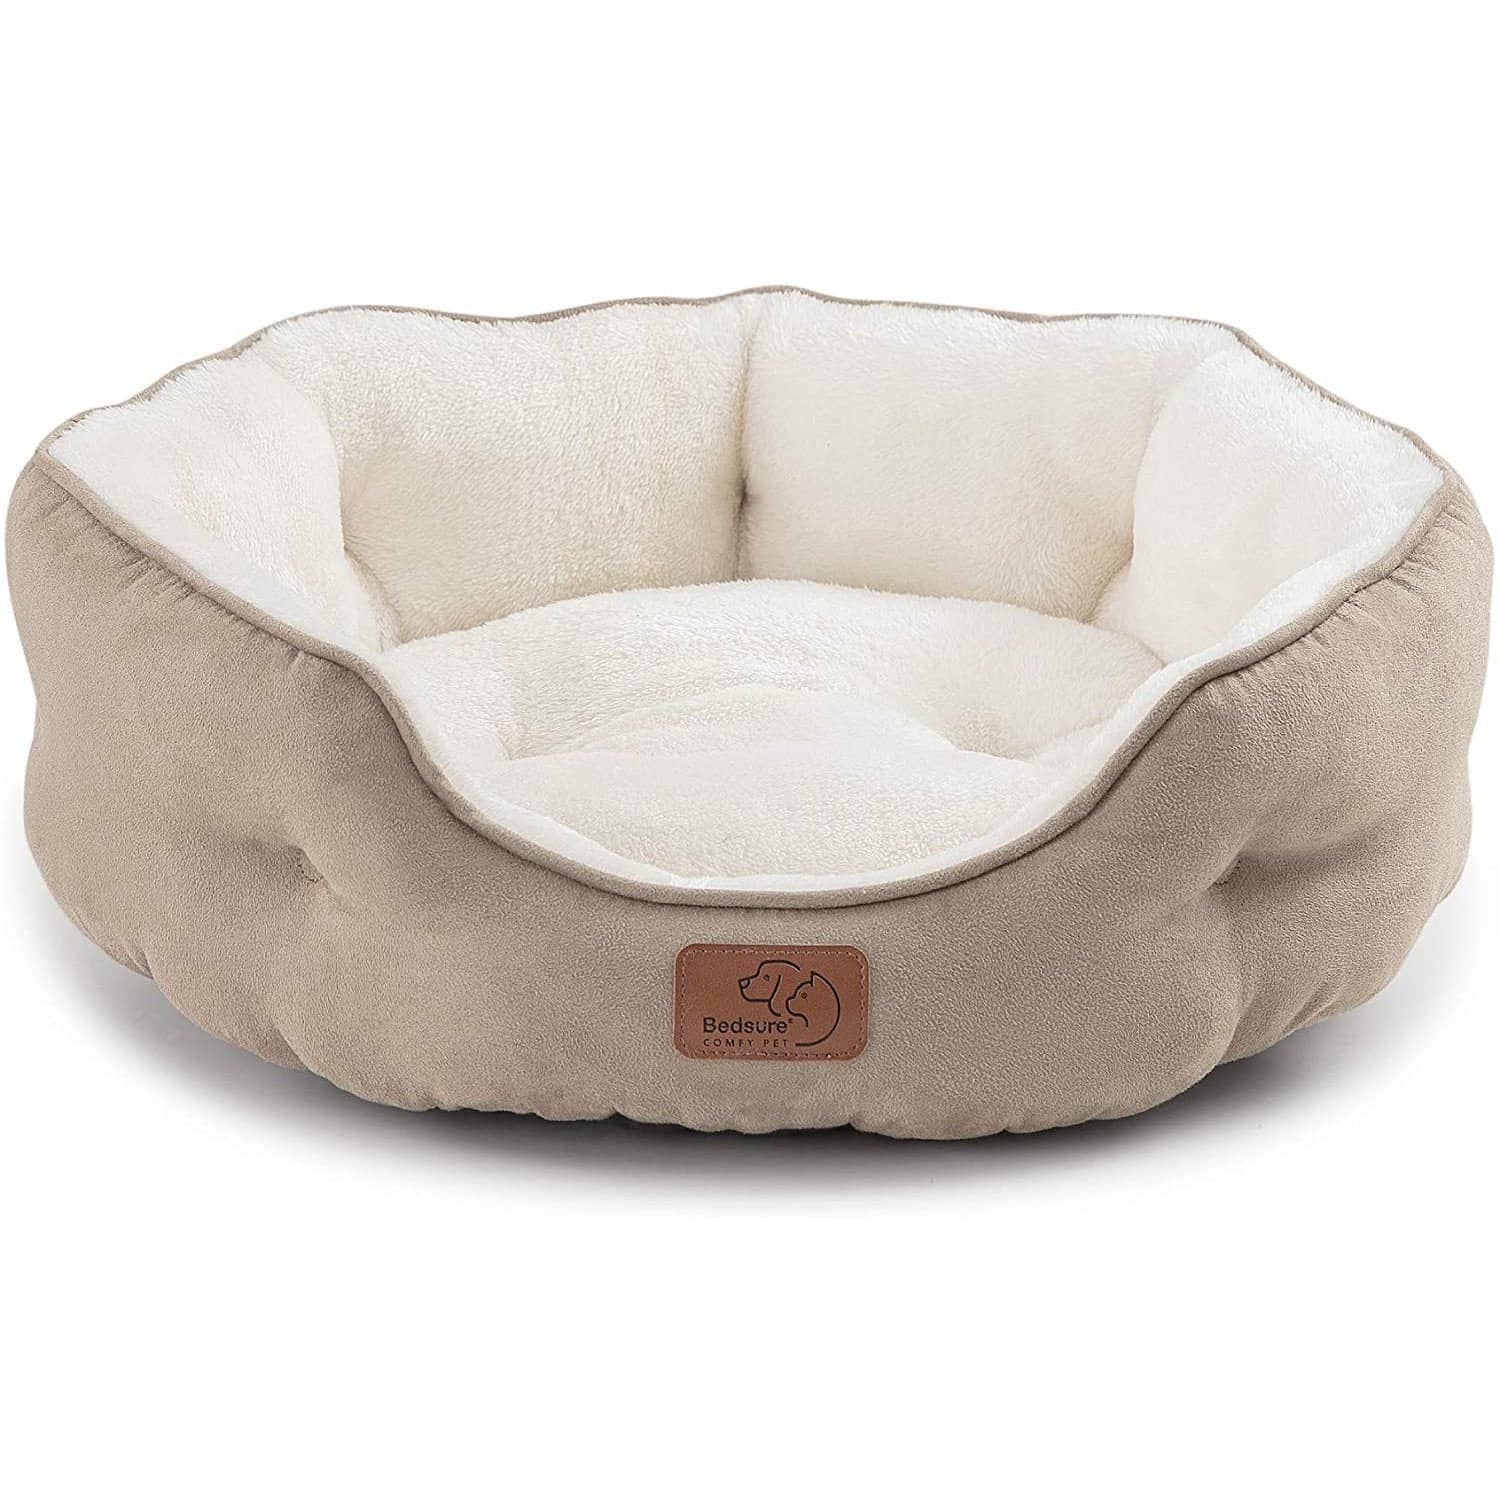 Pet Sleeping Mat Warm Dog Bed Soft Fleece Pet Blanket Cat Litter